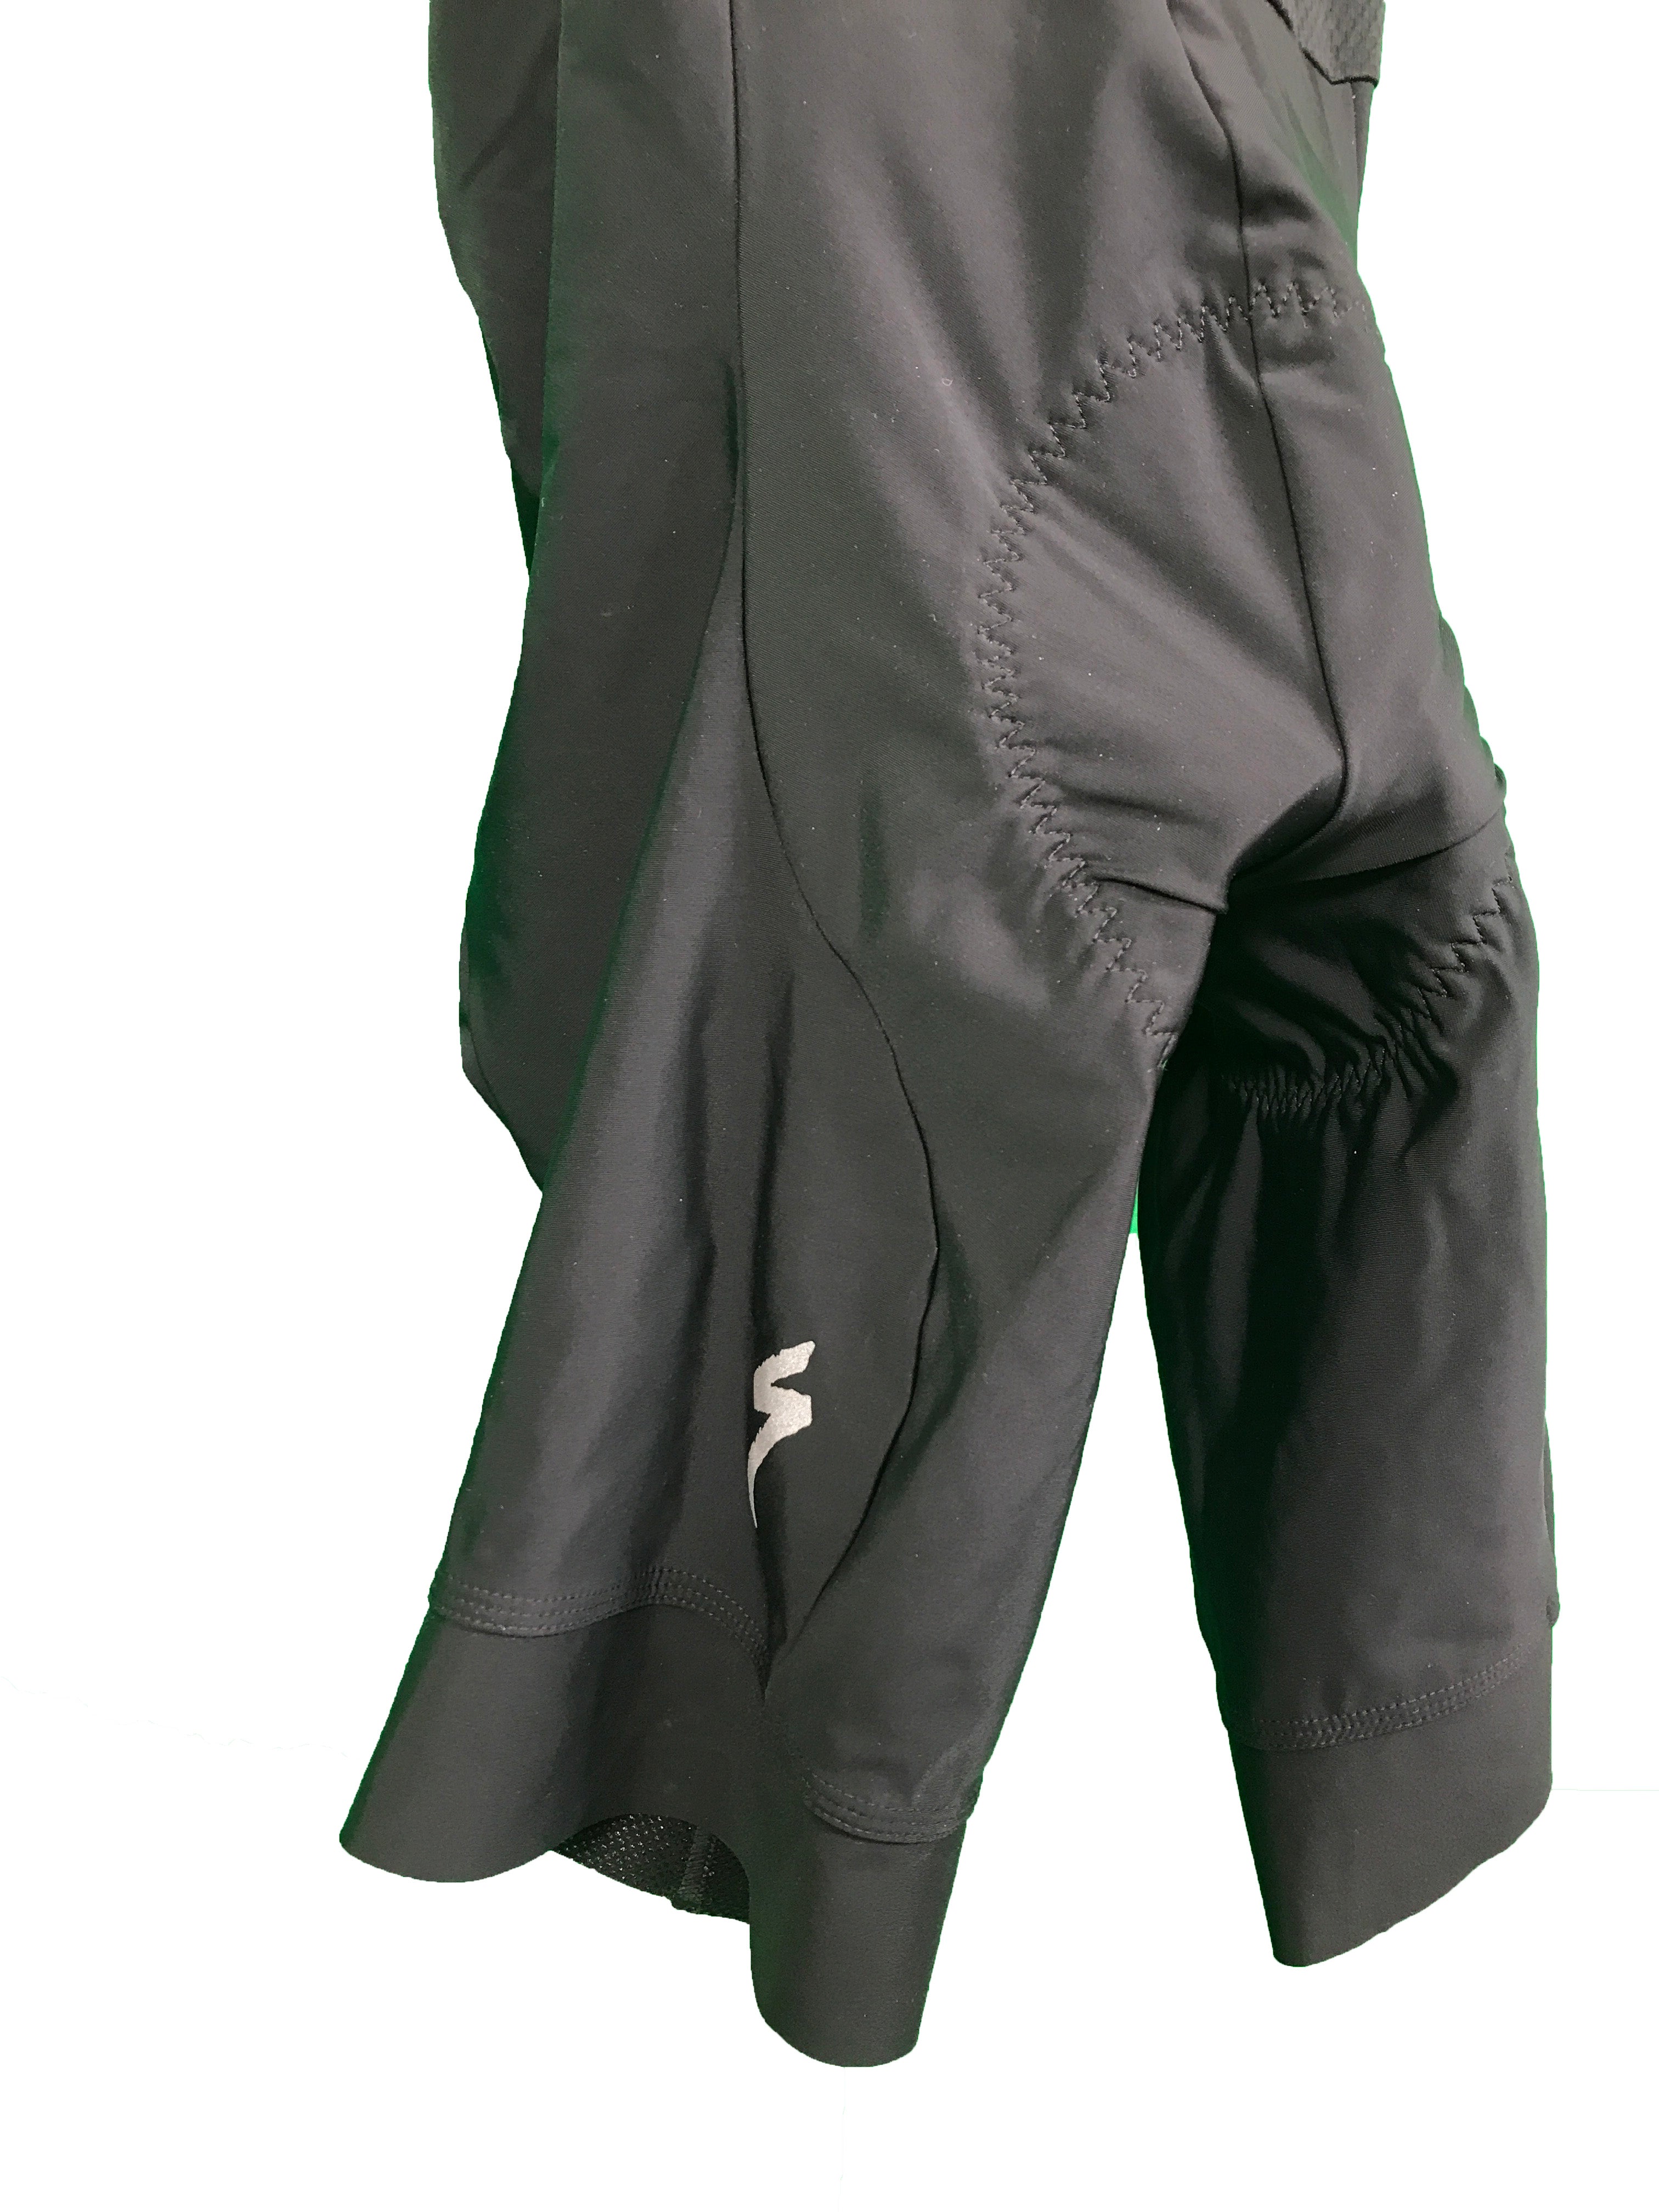 Specialized RBX w/SWAT Bib Shorts with Chamois Men's Size M NWT